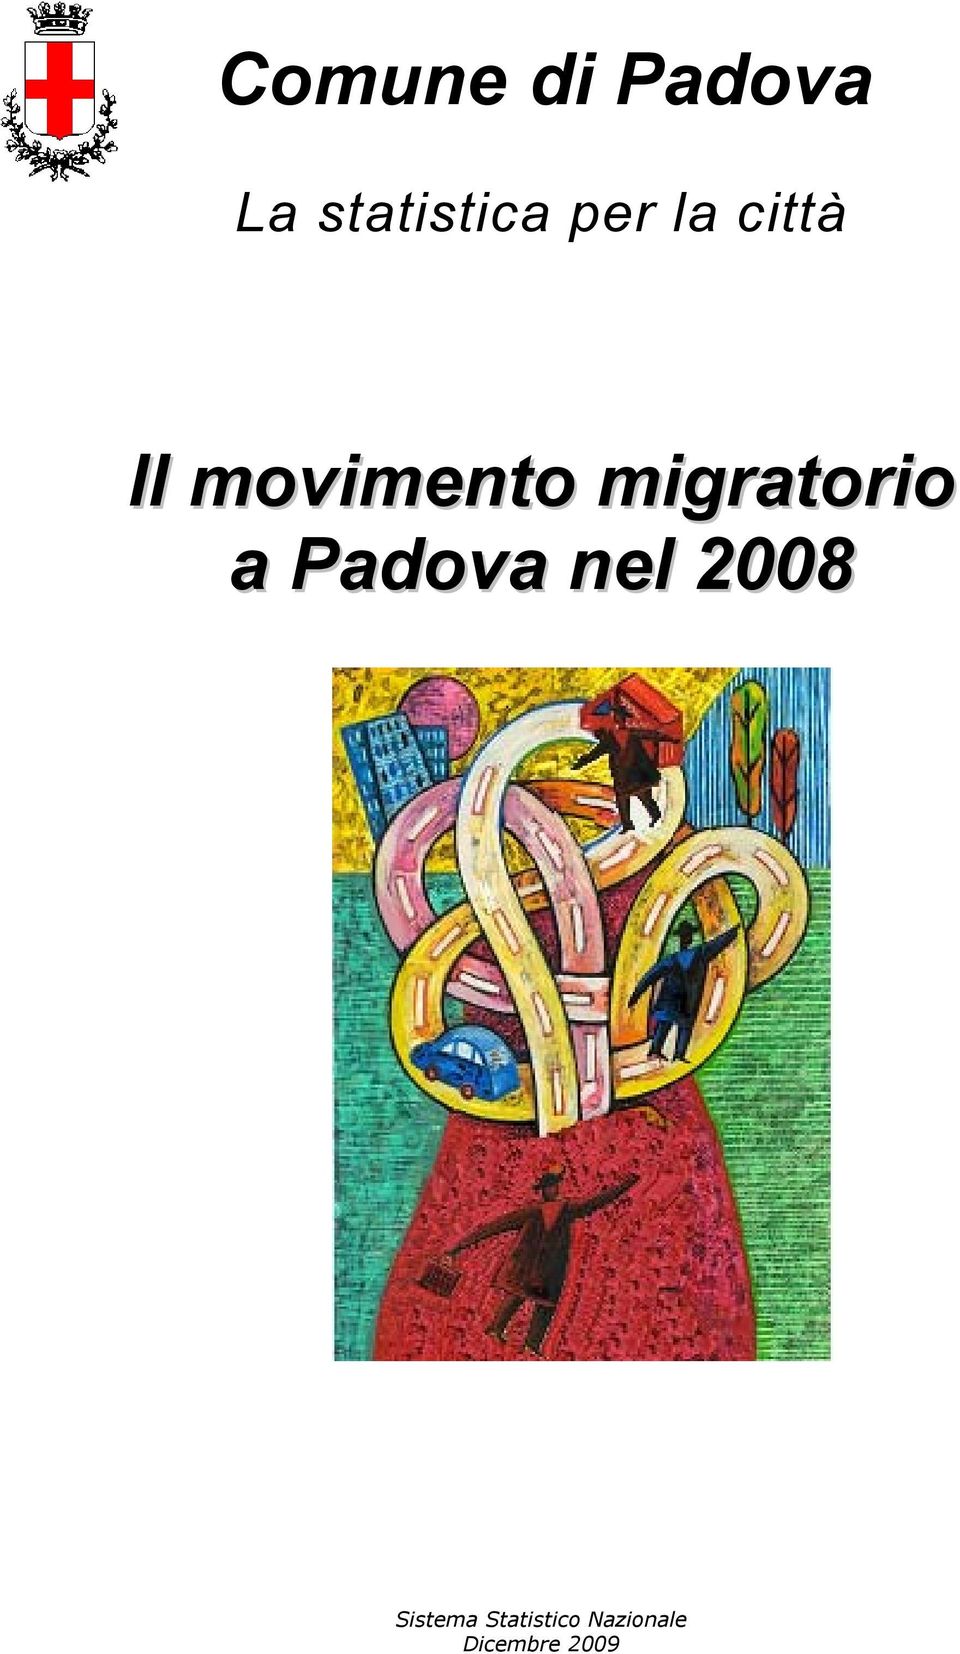 migratorio a Padova nel 2008